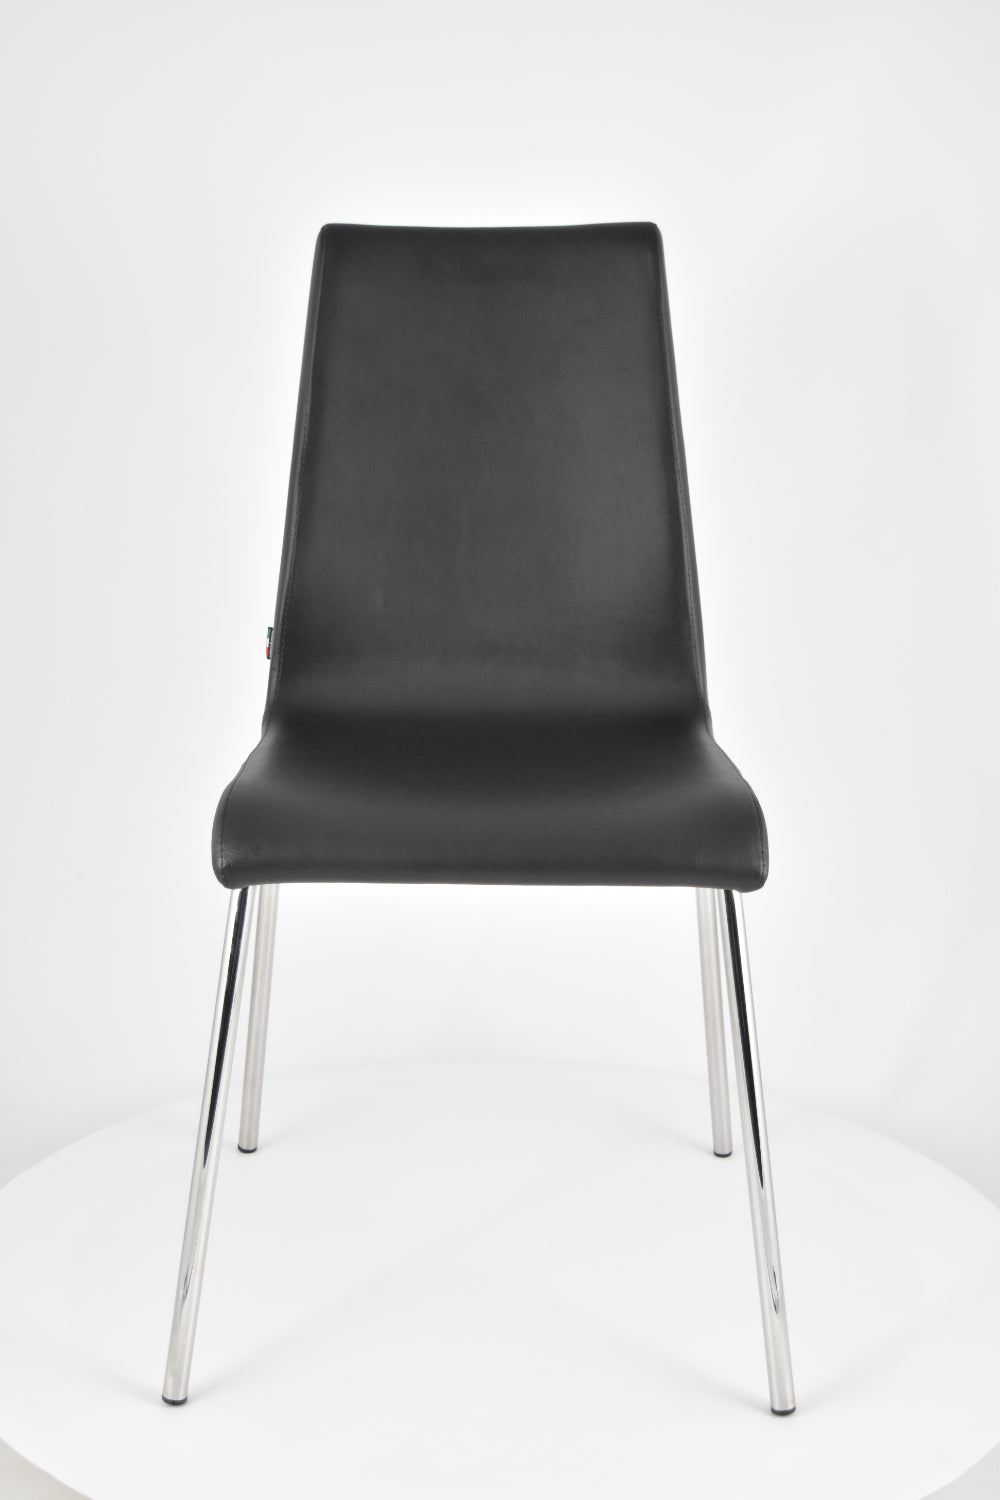 Tommychairs - Set 2 sillas Madrid con Patas de Acero Cromado y Asiento en Madera Multicapa, tapizado en Polipiel Color Negro